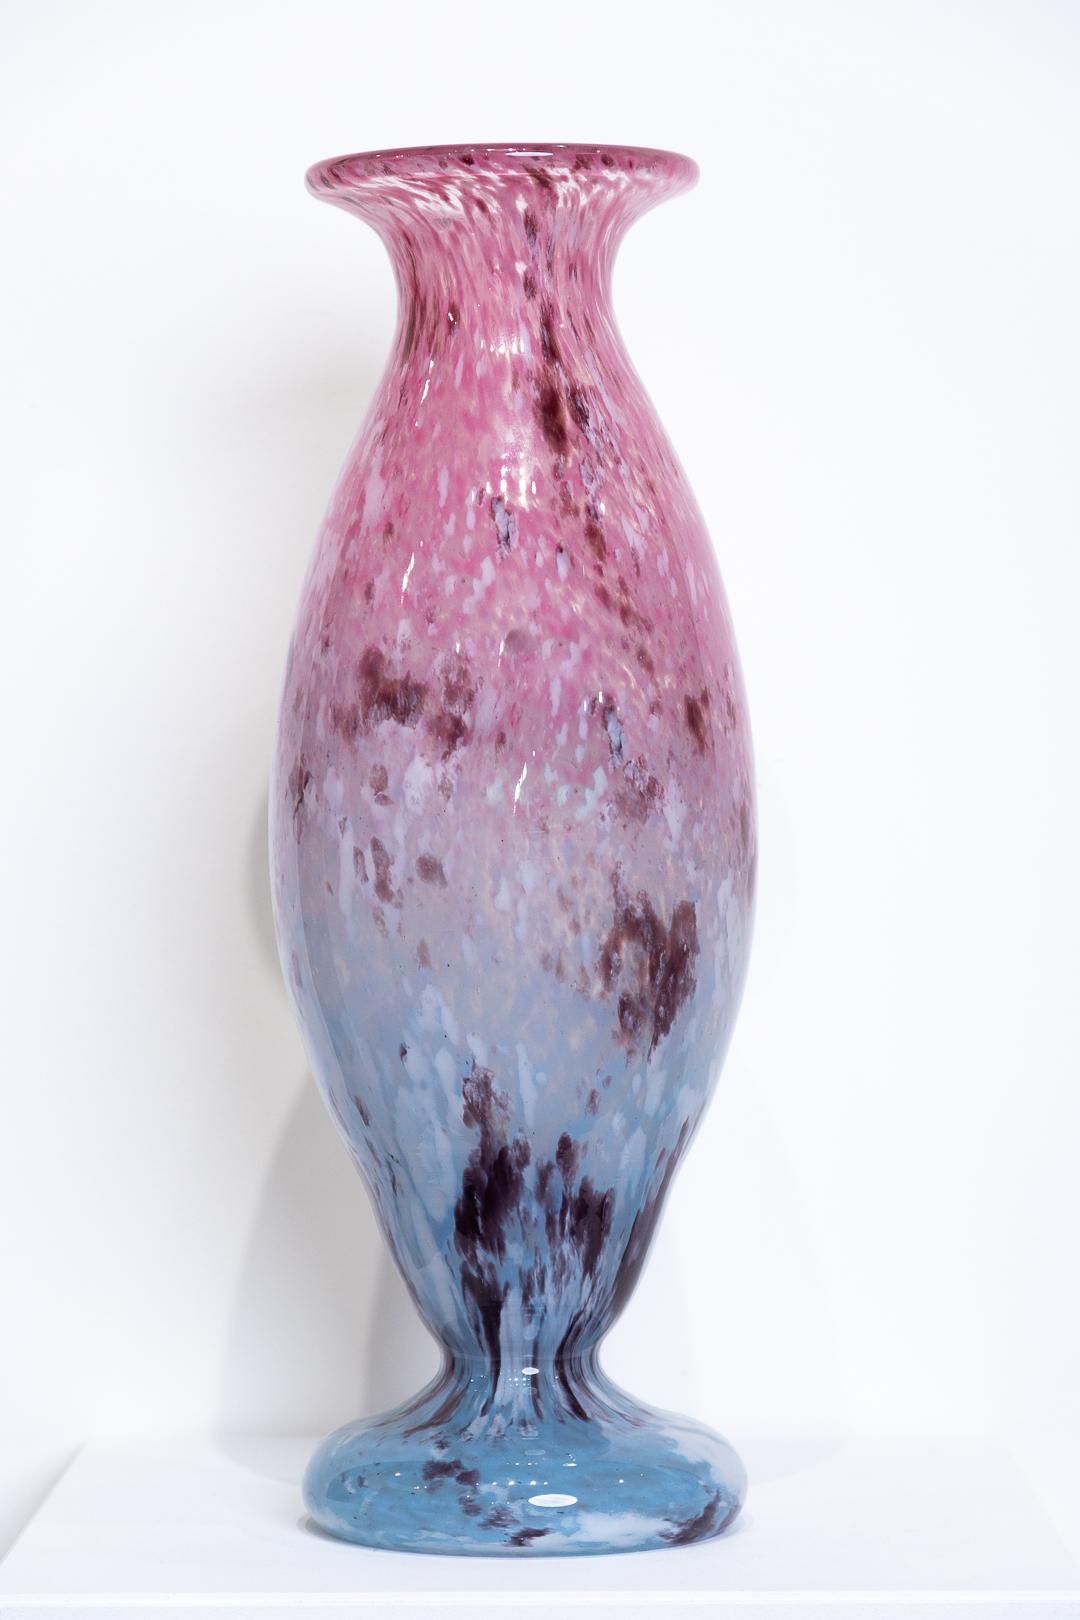 Vase sans titre, rose et bleu, moucheté, scintillant, signé par l'artiste